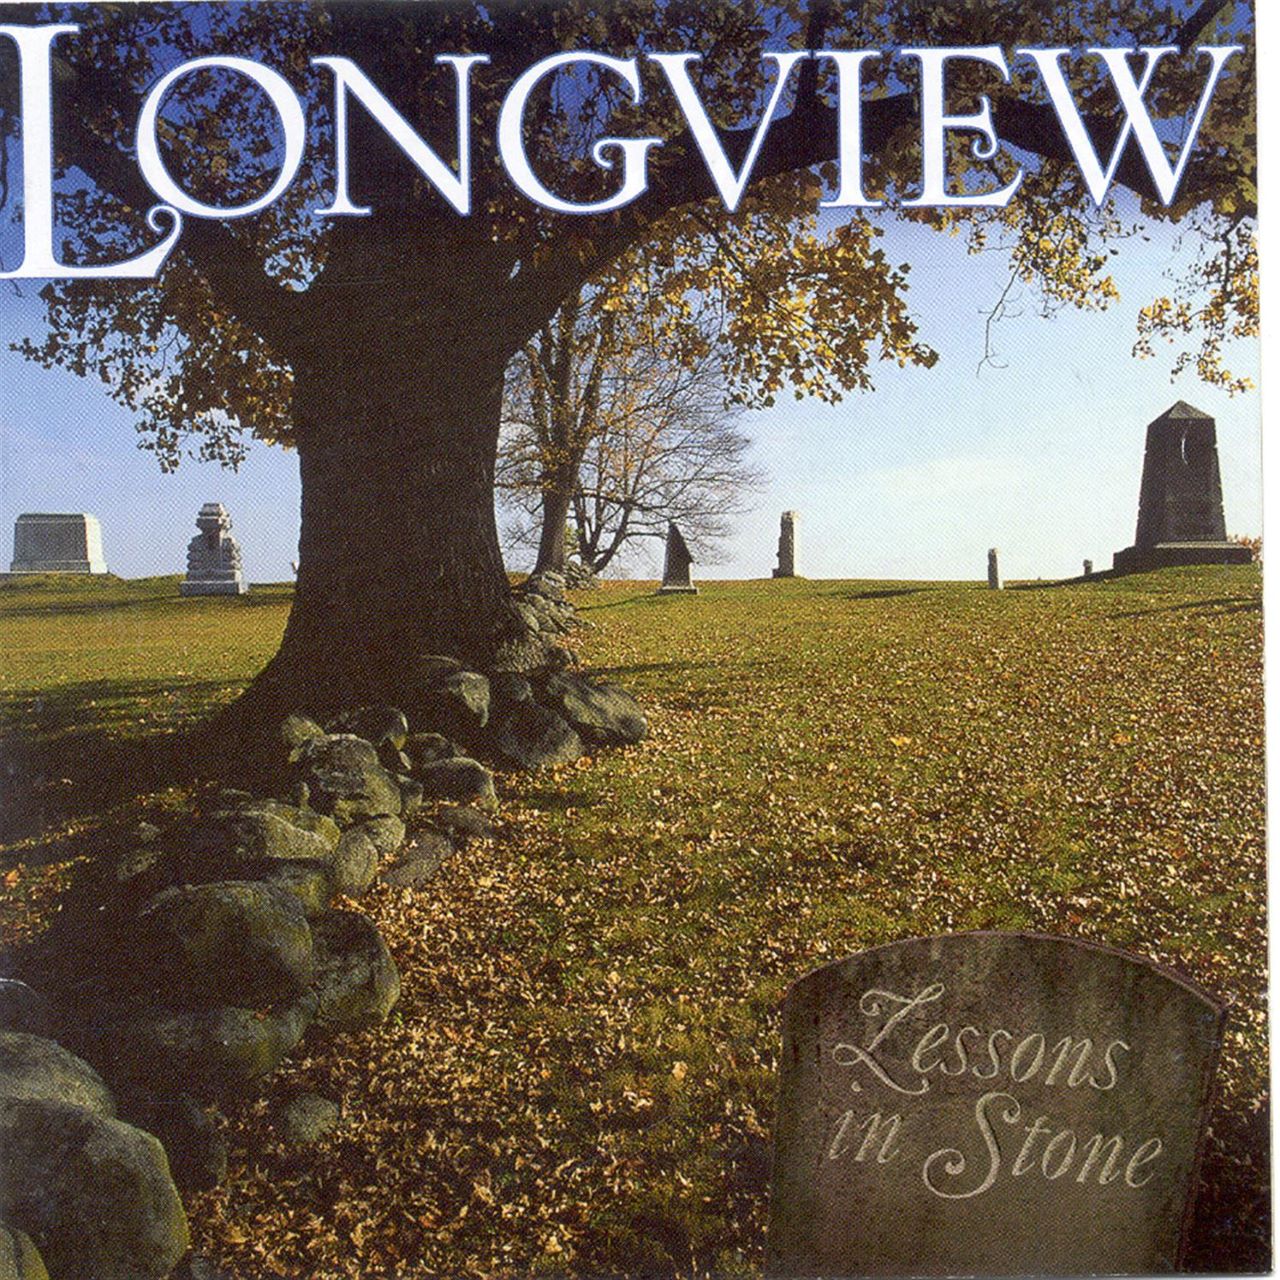 Longview - Lessons In Stone cover album